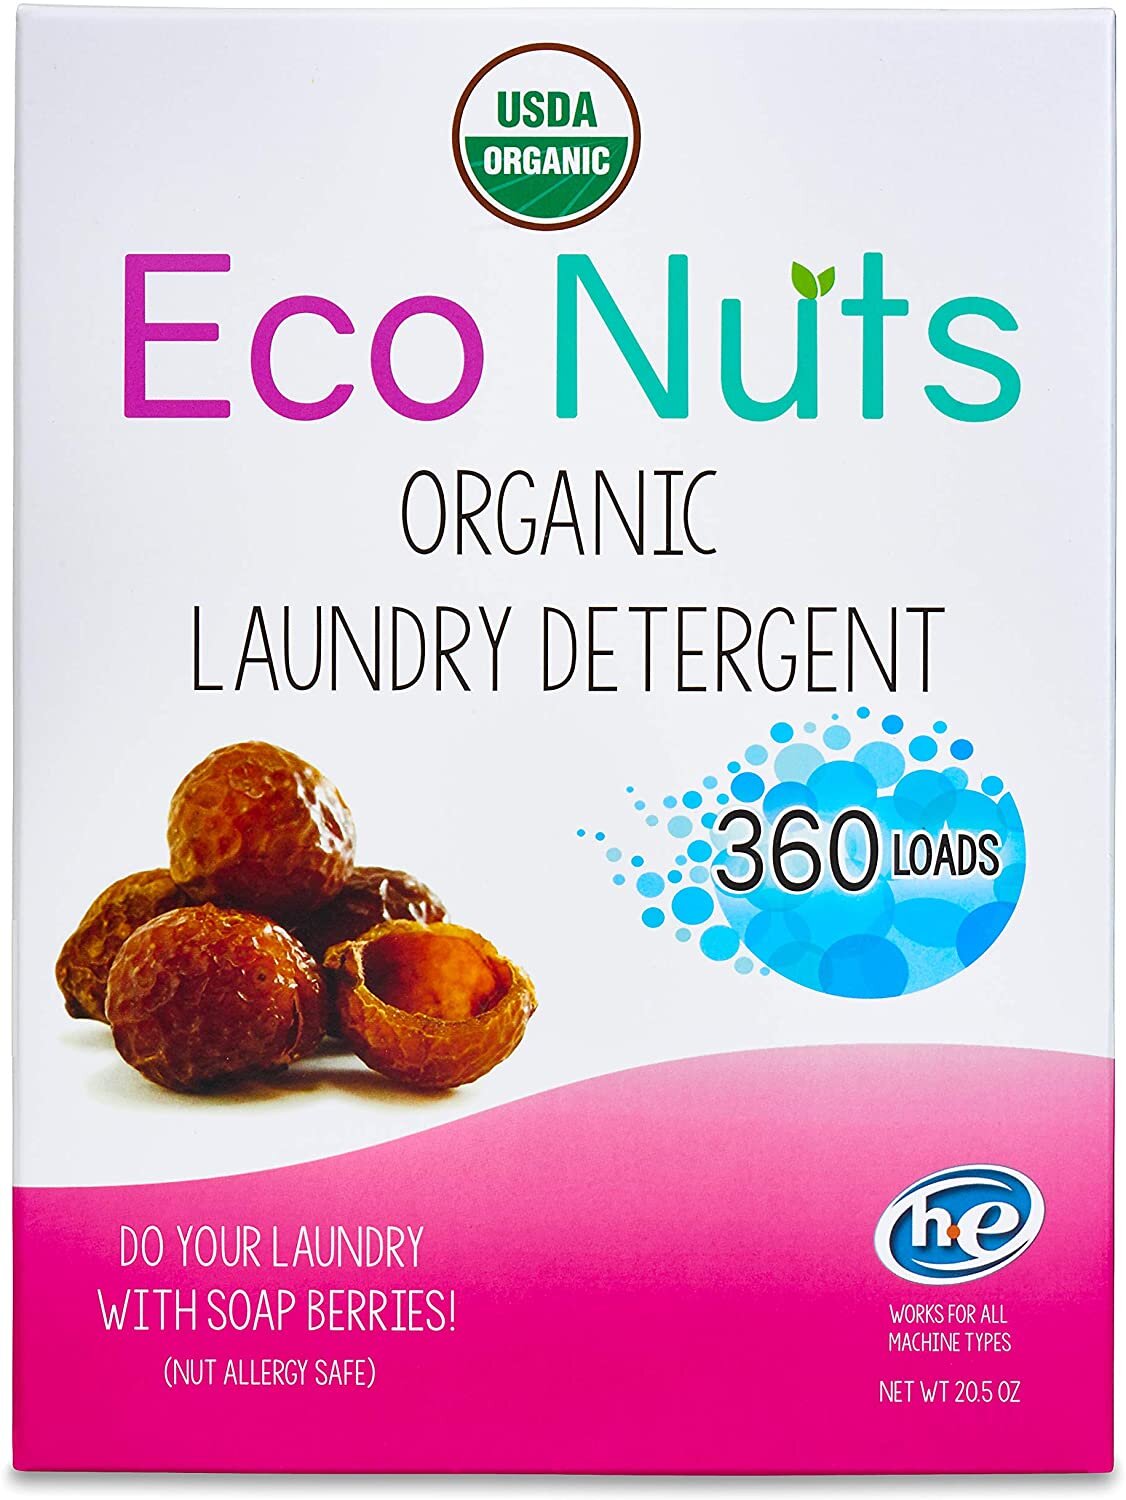 Eco Nuts